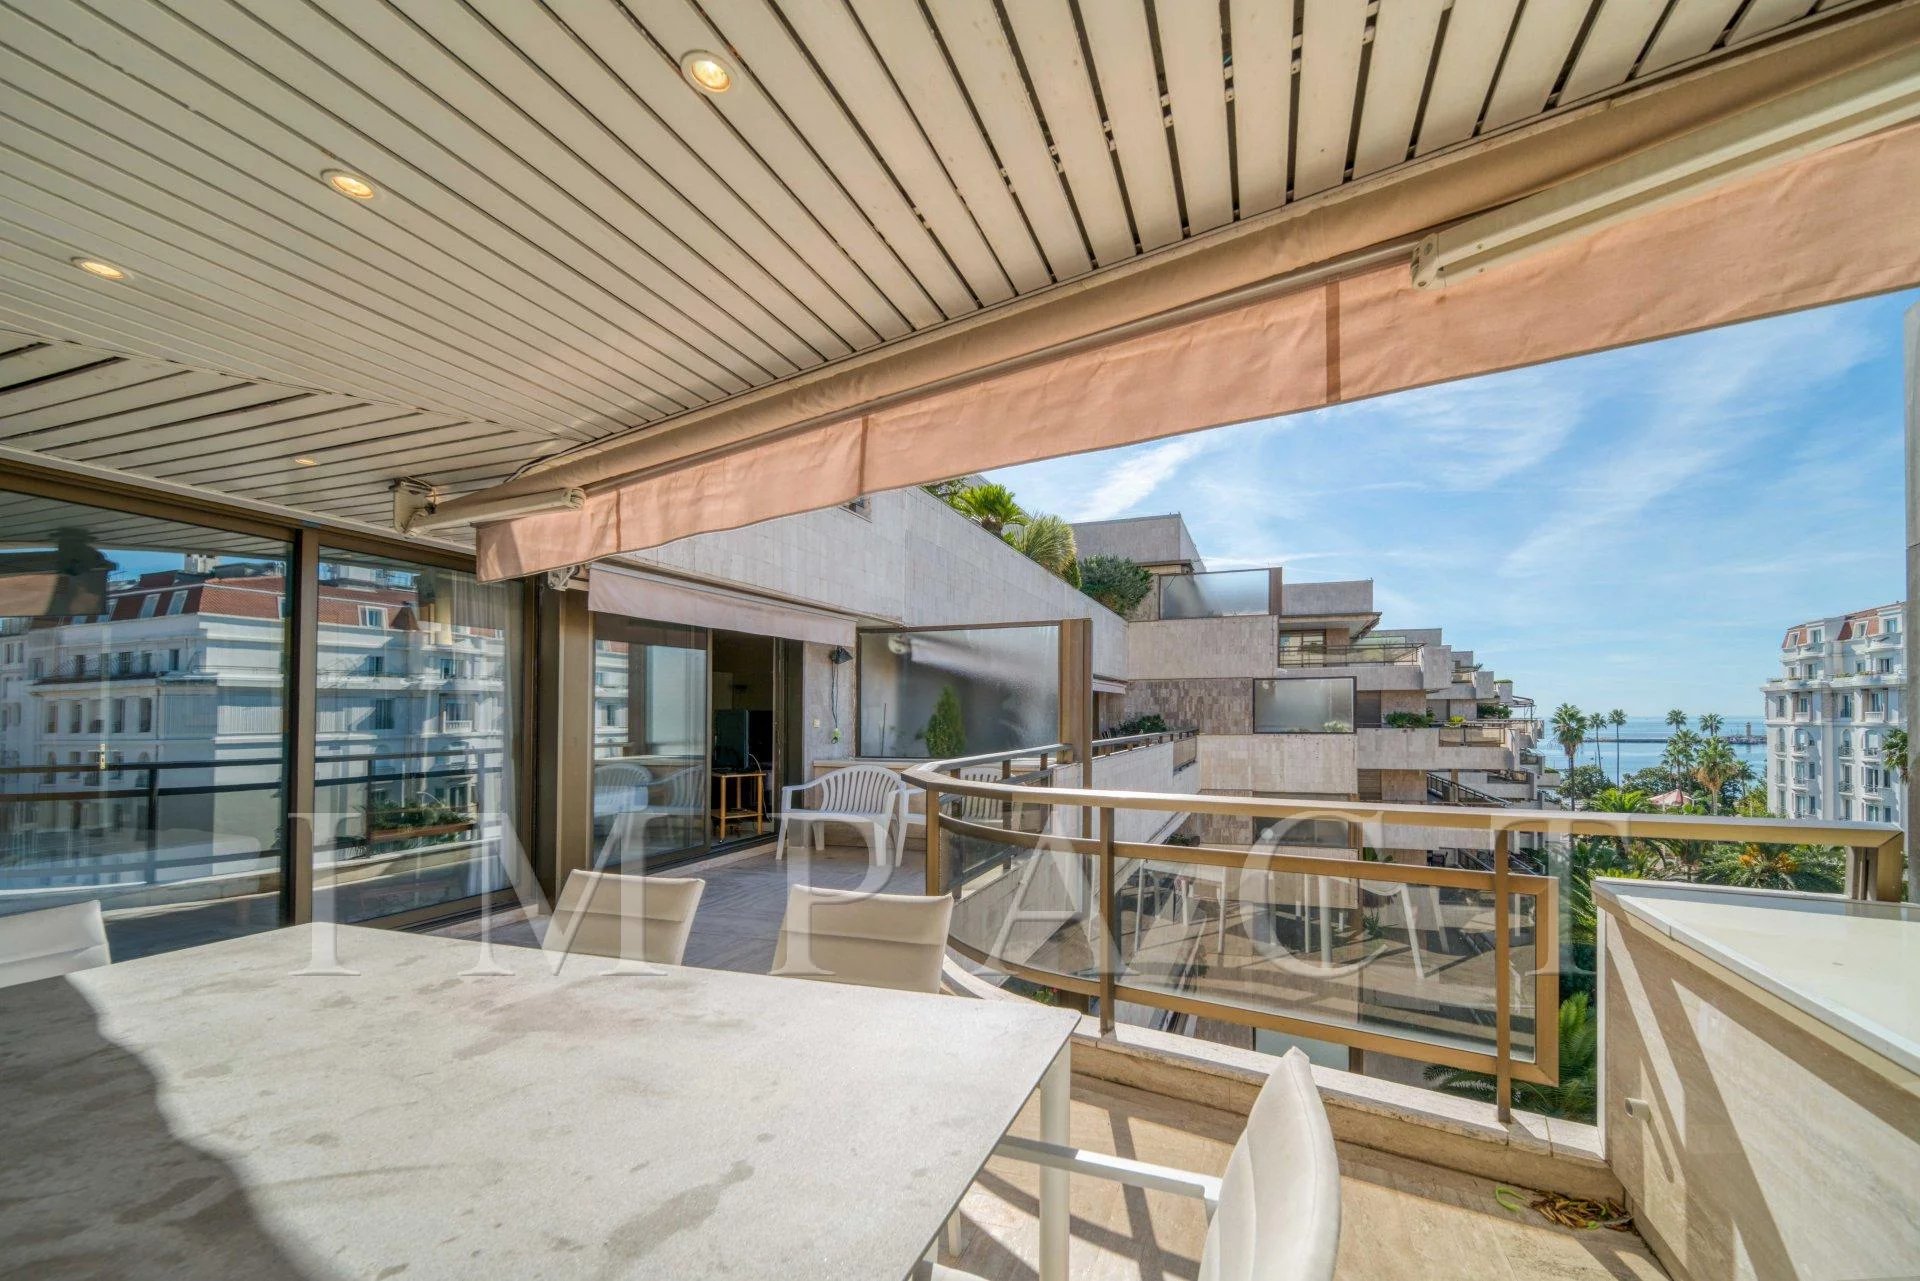 Location Cannes, Appartement doté d'une spacieuse terrasse 